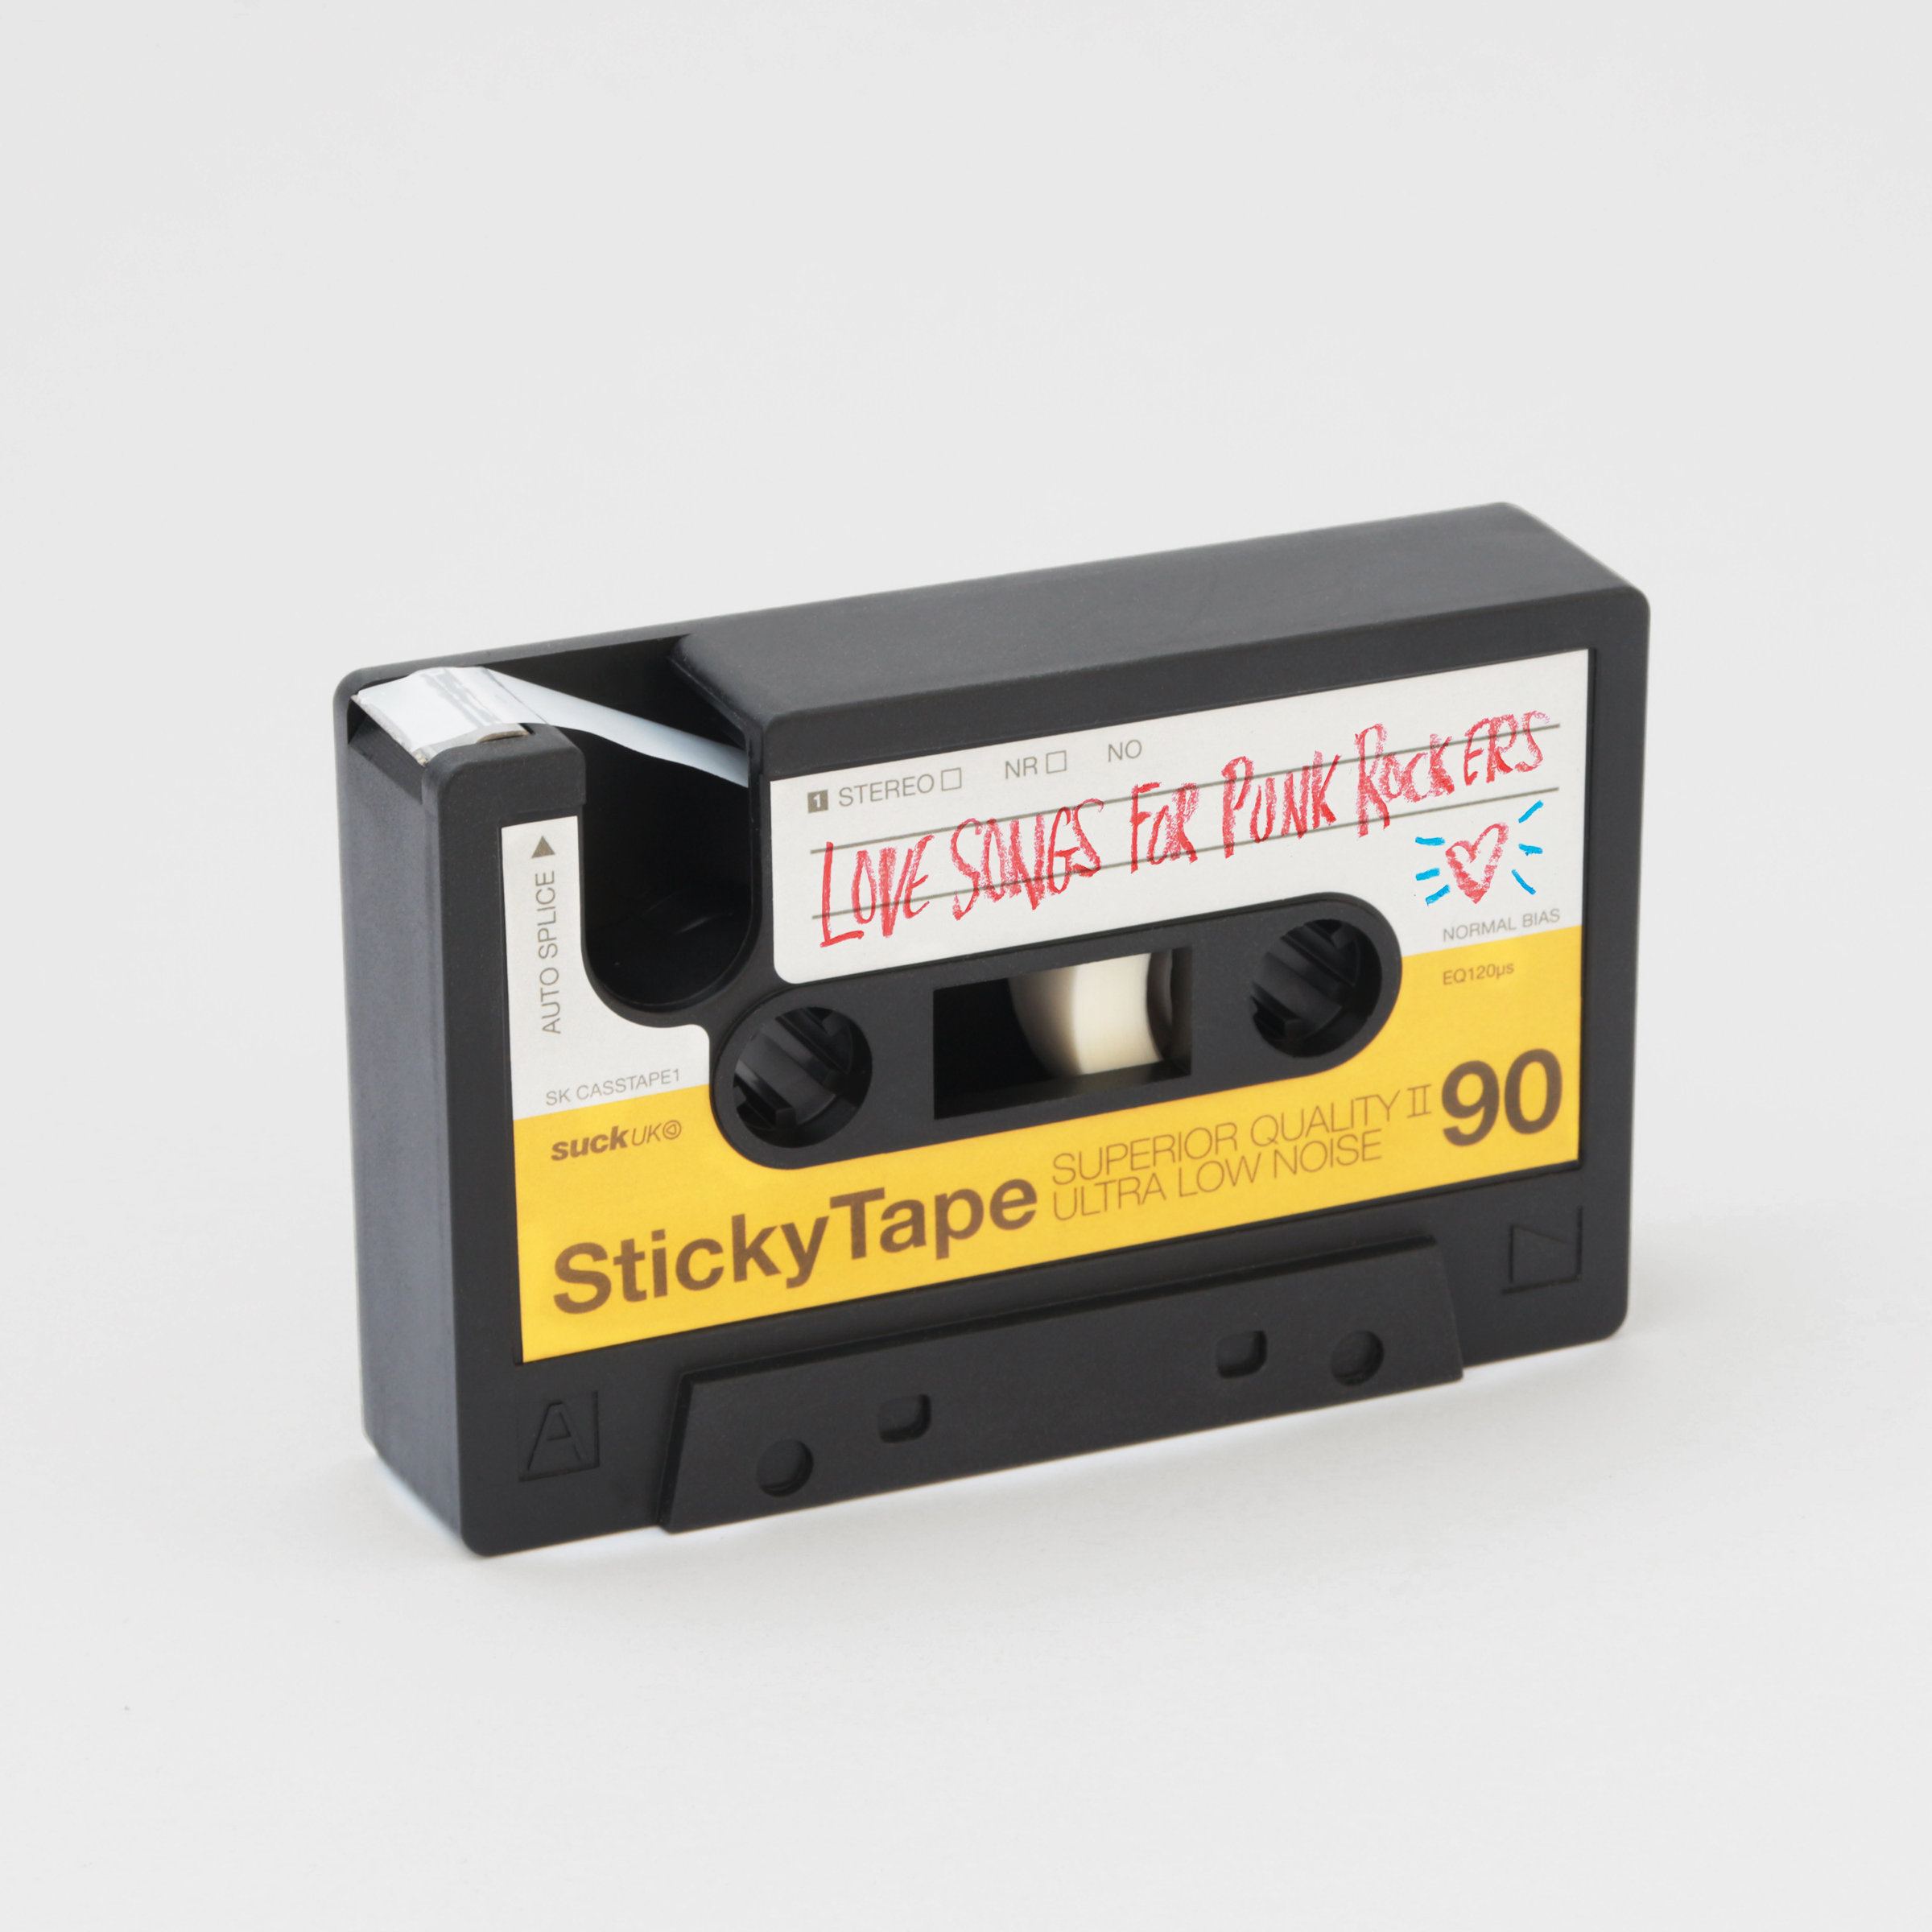 Customise your Cassette Sticky Tape Dispenser